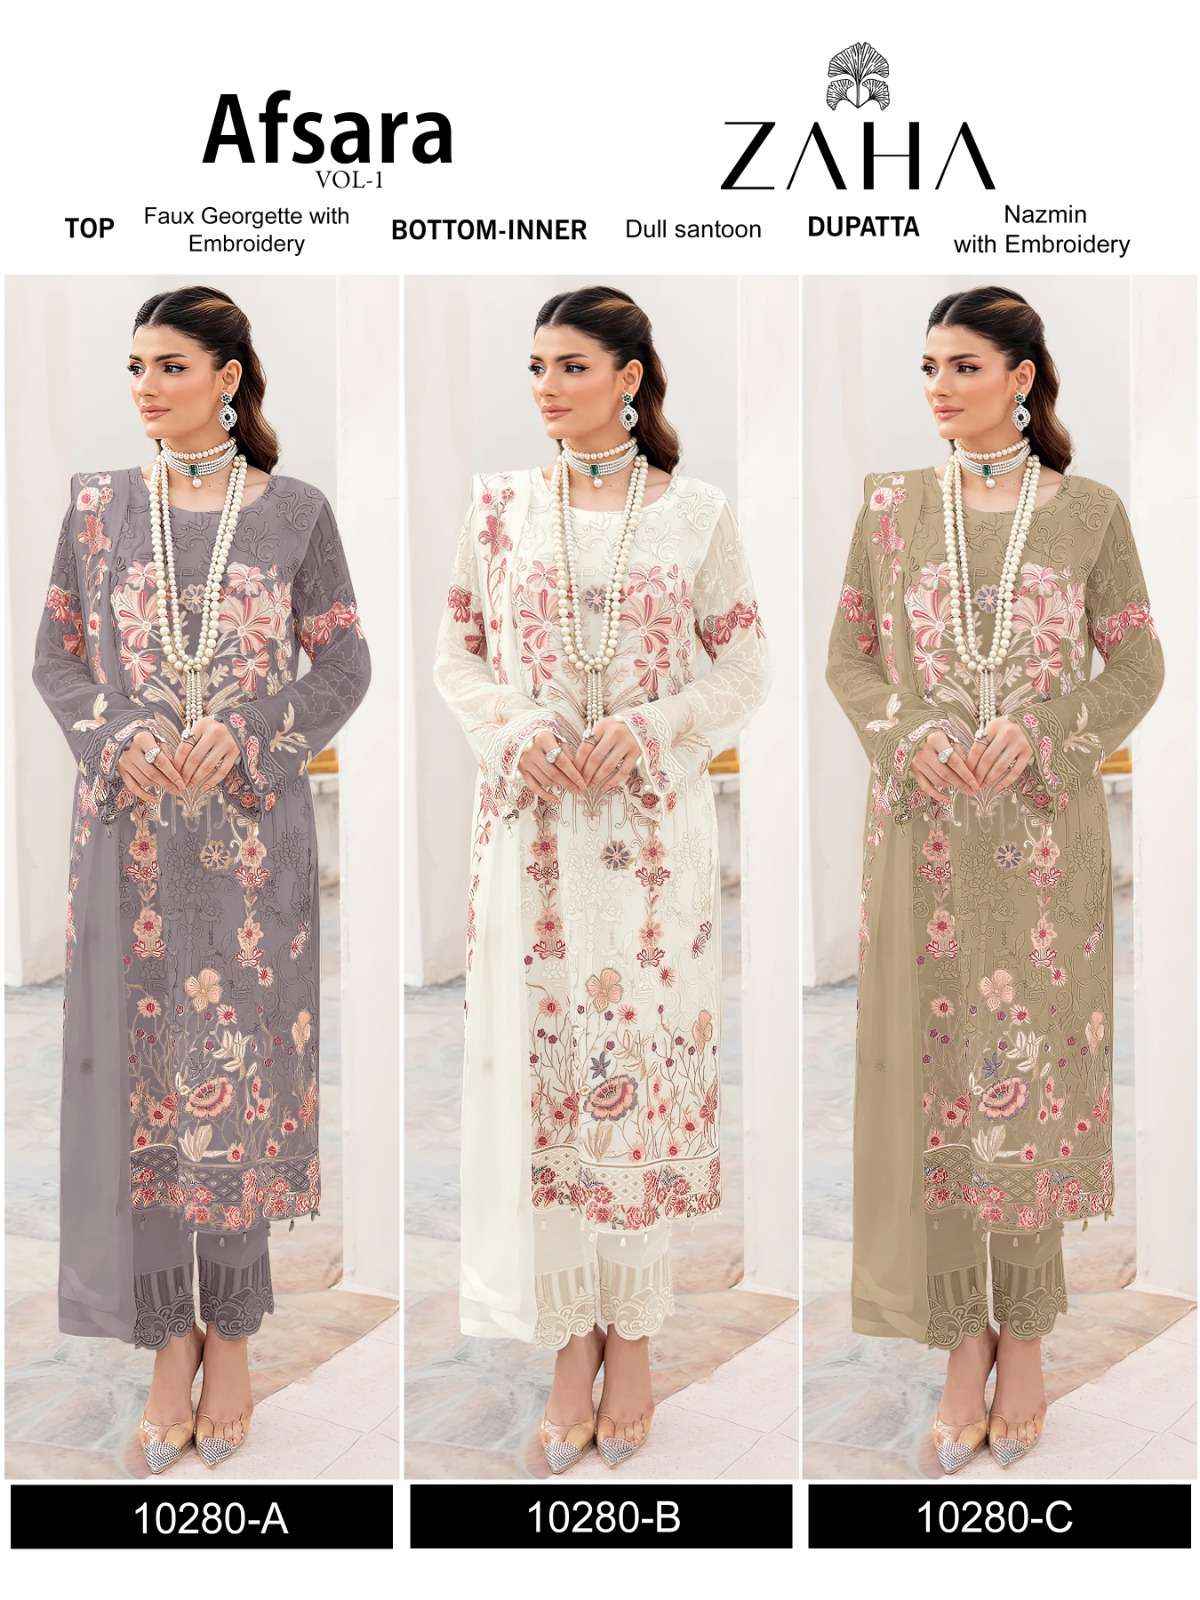 Zaha Afsara Vol 1 Georgette Dress Material 3 pcs Catalogue